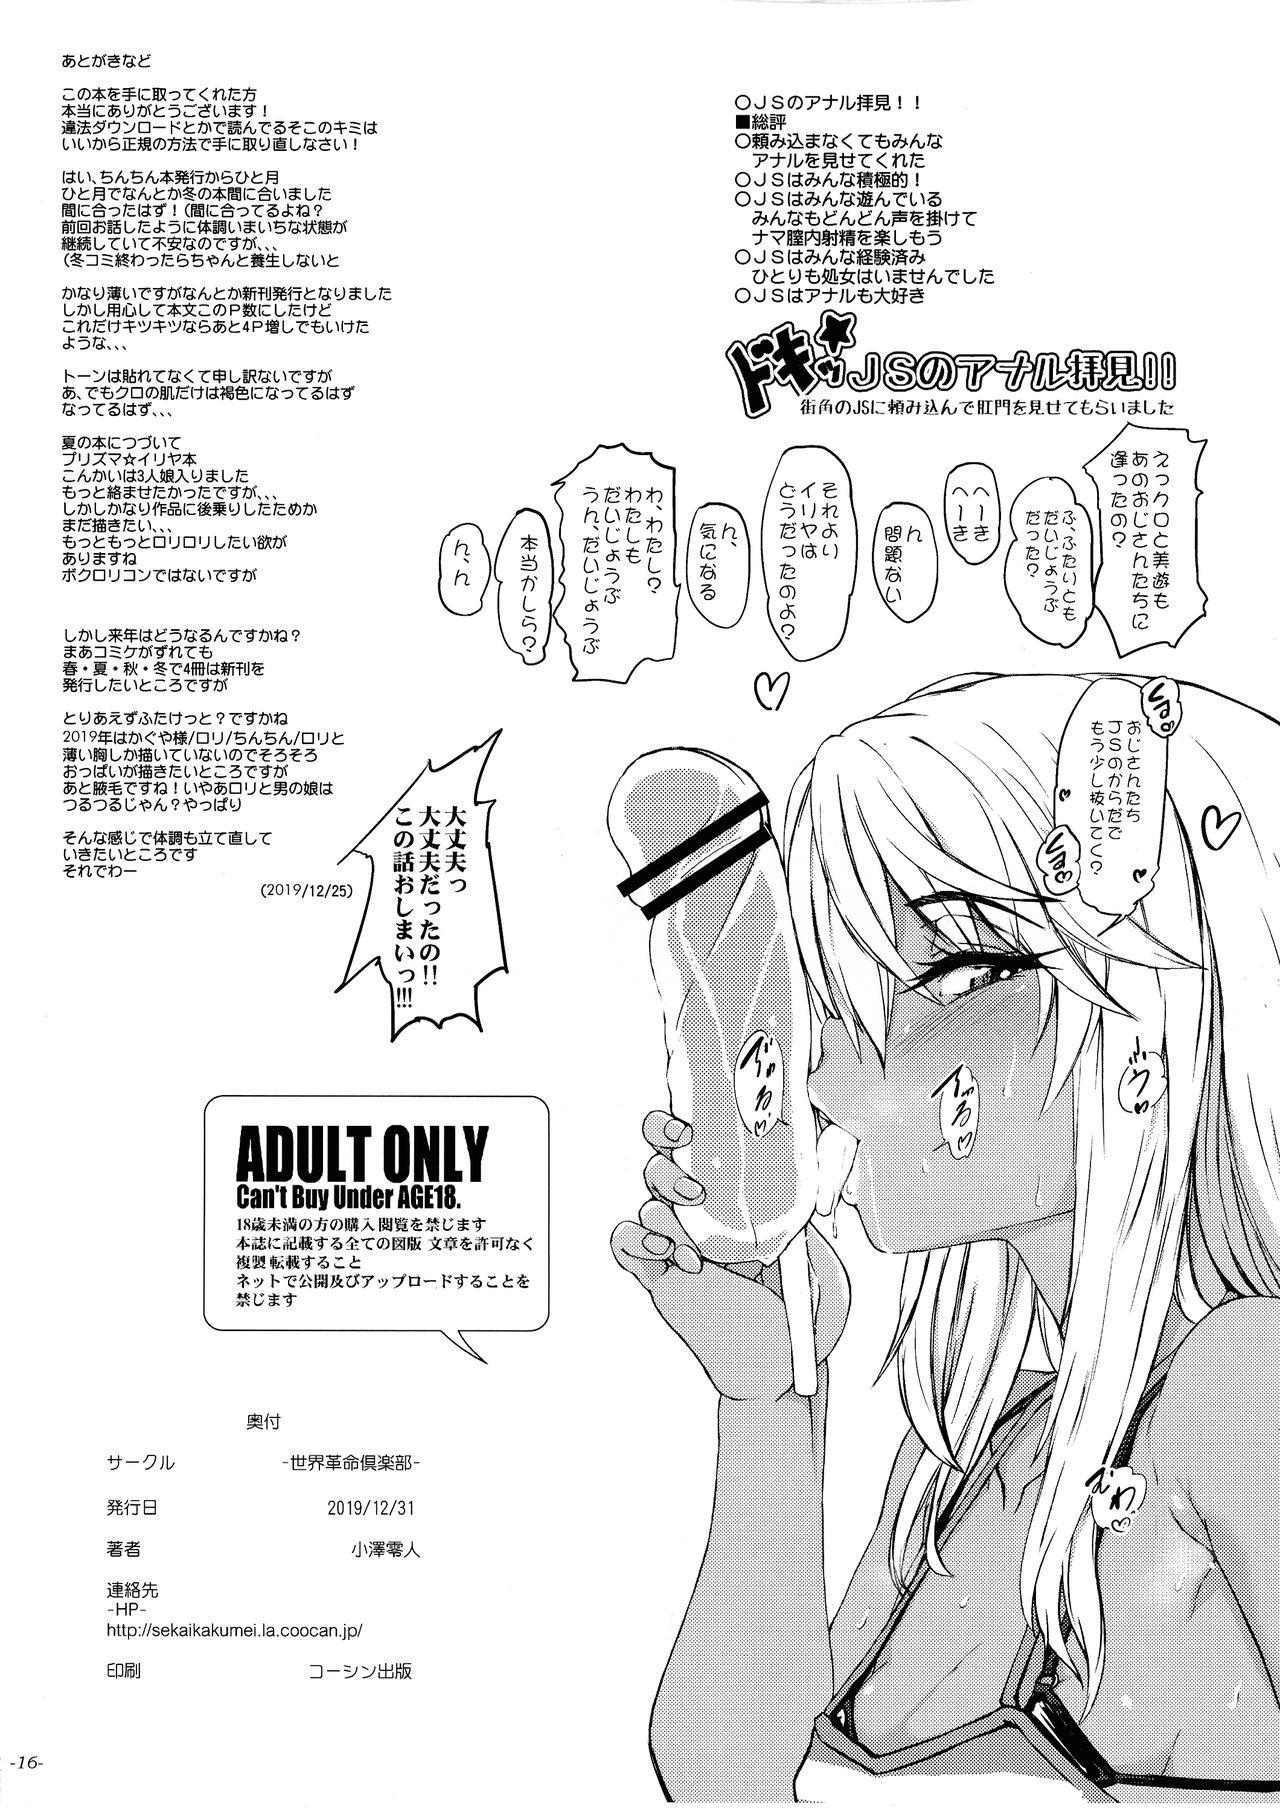 Gemidos Kyuubo!! Onnanoko ga Ojisan no Yokubou o Motomete Imasu!! - Fate grand order Gordibuena - Page 18